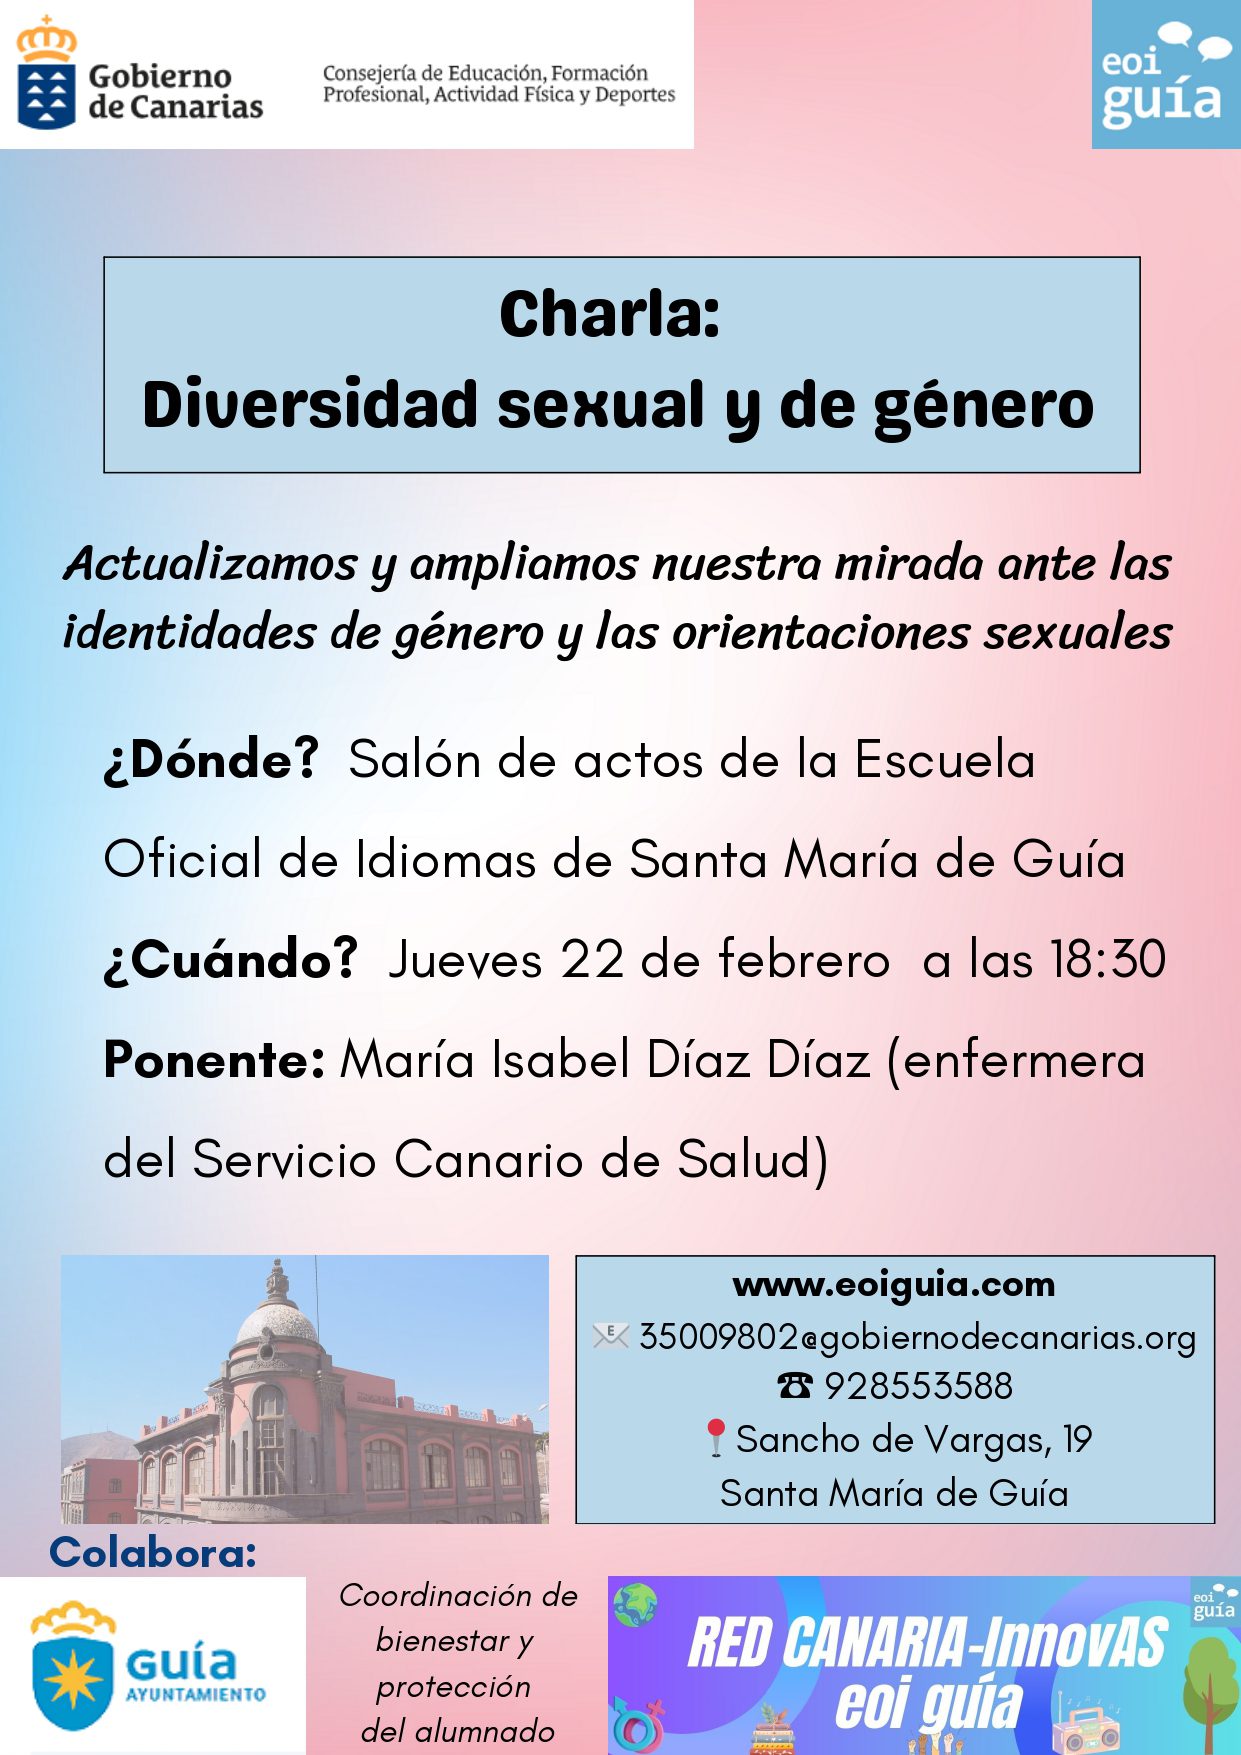 La Escuela Oficial de Idiomas de Santa María de Guía organiza una charla sobre diversidad sexual y de género  abierta a toda la ciudadanía